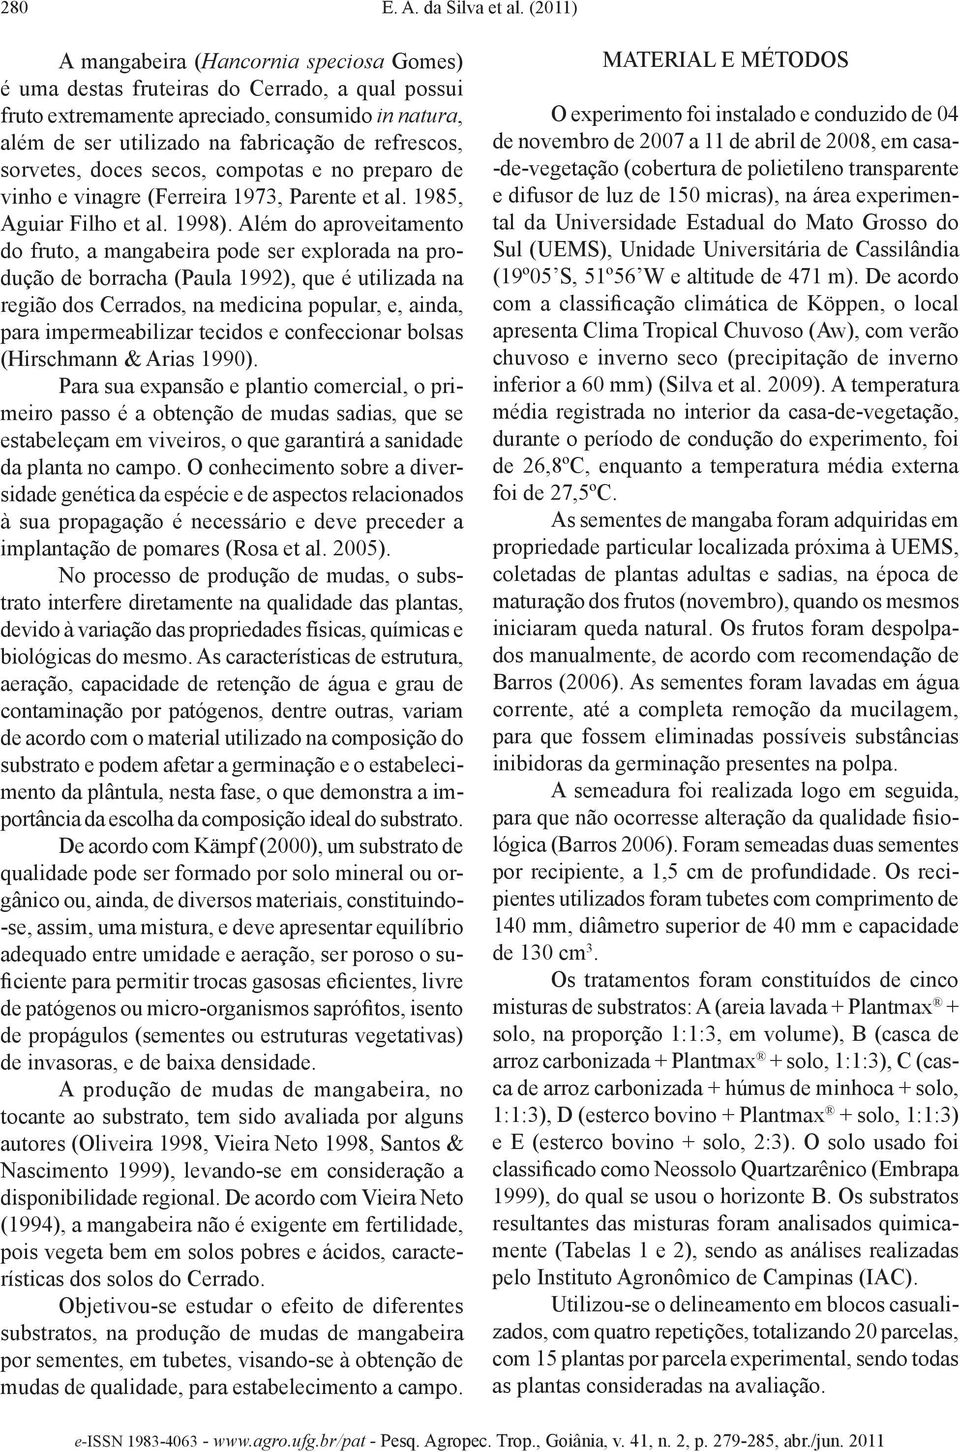 sorvetes, doces secos, compotas e no preparo de vinho e vinagre (Ferreira 973, Parente et al. 985, Aguiar Filho et al. 998).